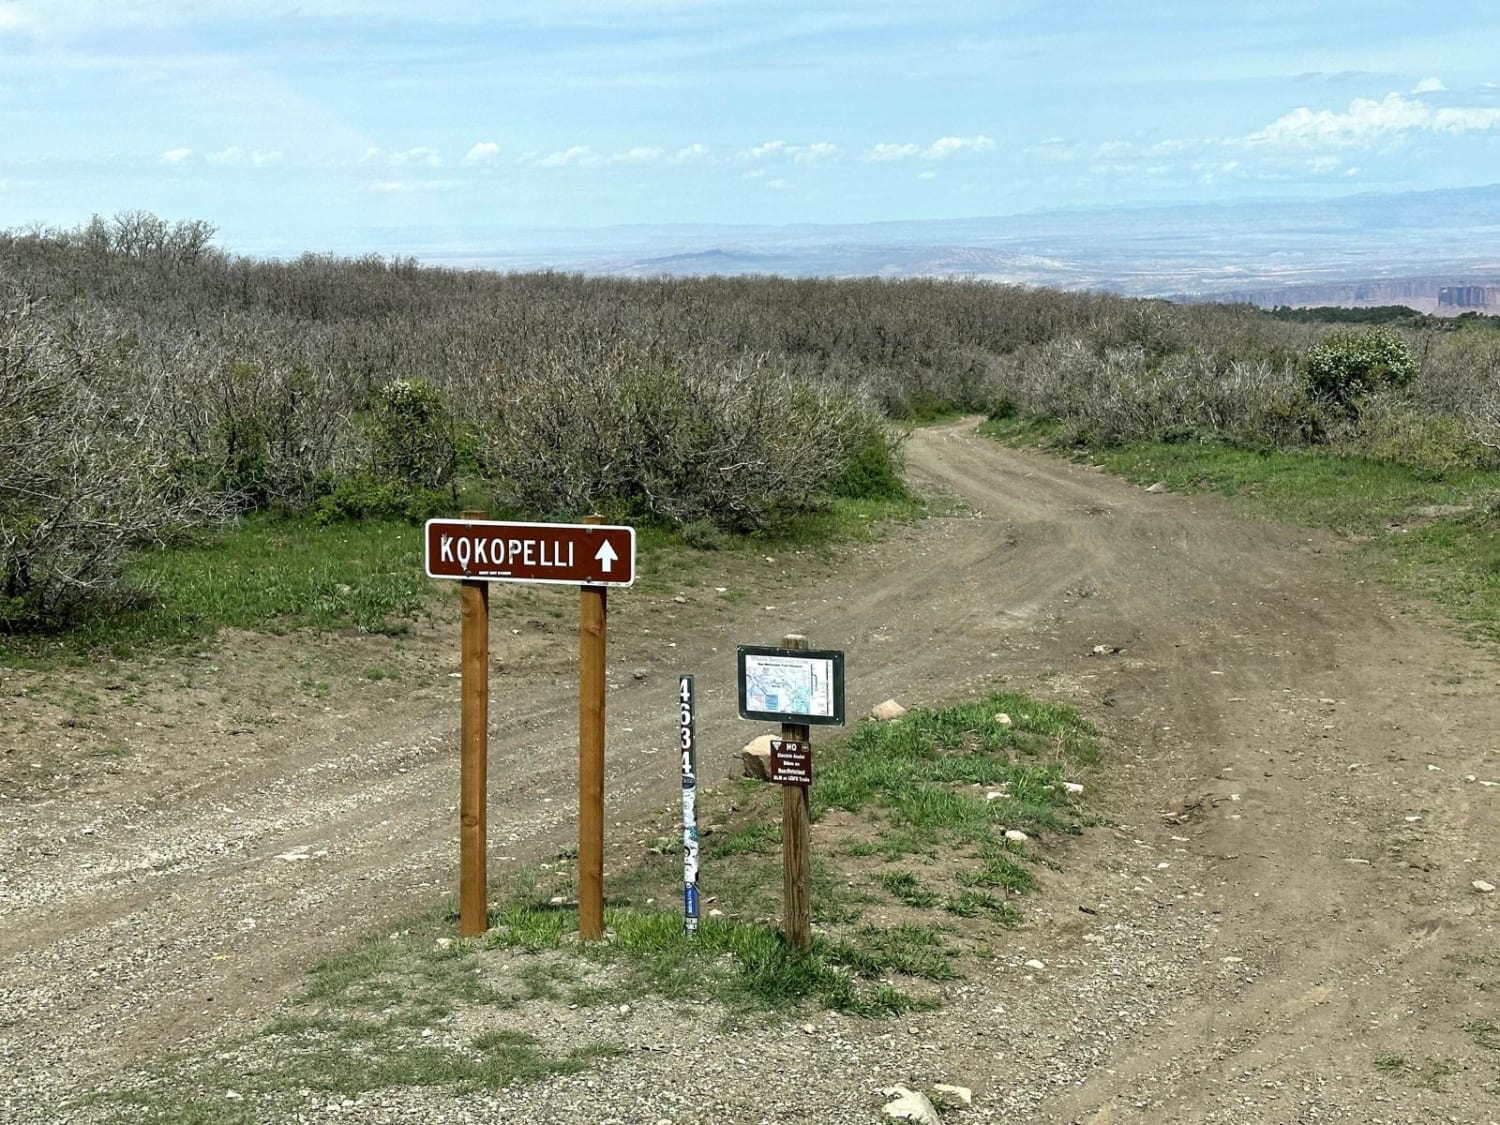 Kokopelli Trail (Castle Valley Overlook to Sand Flats Road)